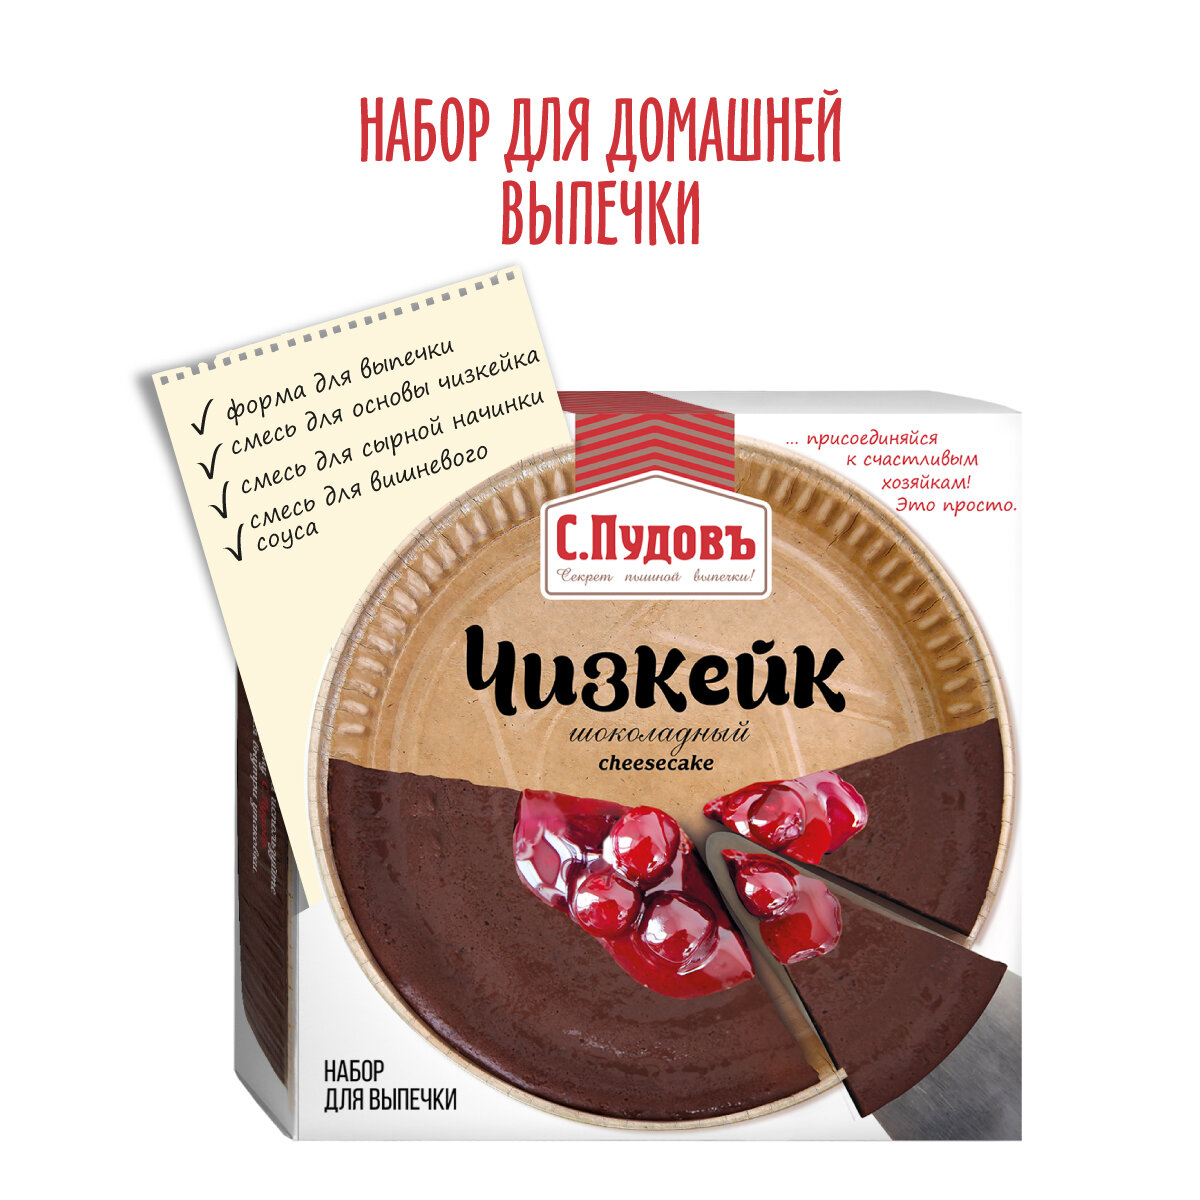 Смесь для выпечки Чизкейк шоколадный С. Пудовъ, 350 г